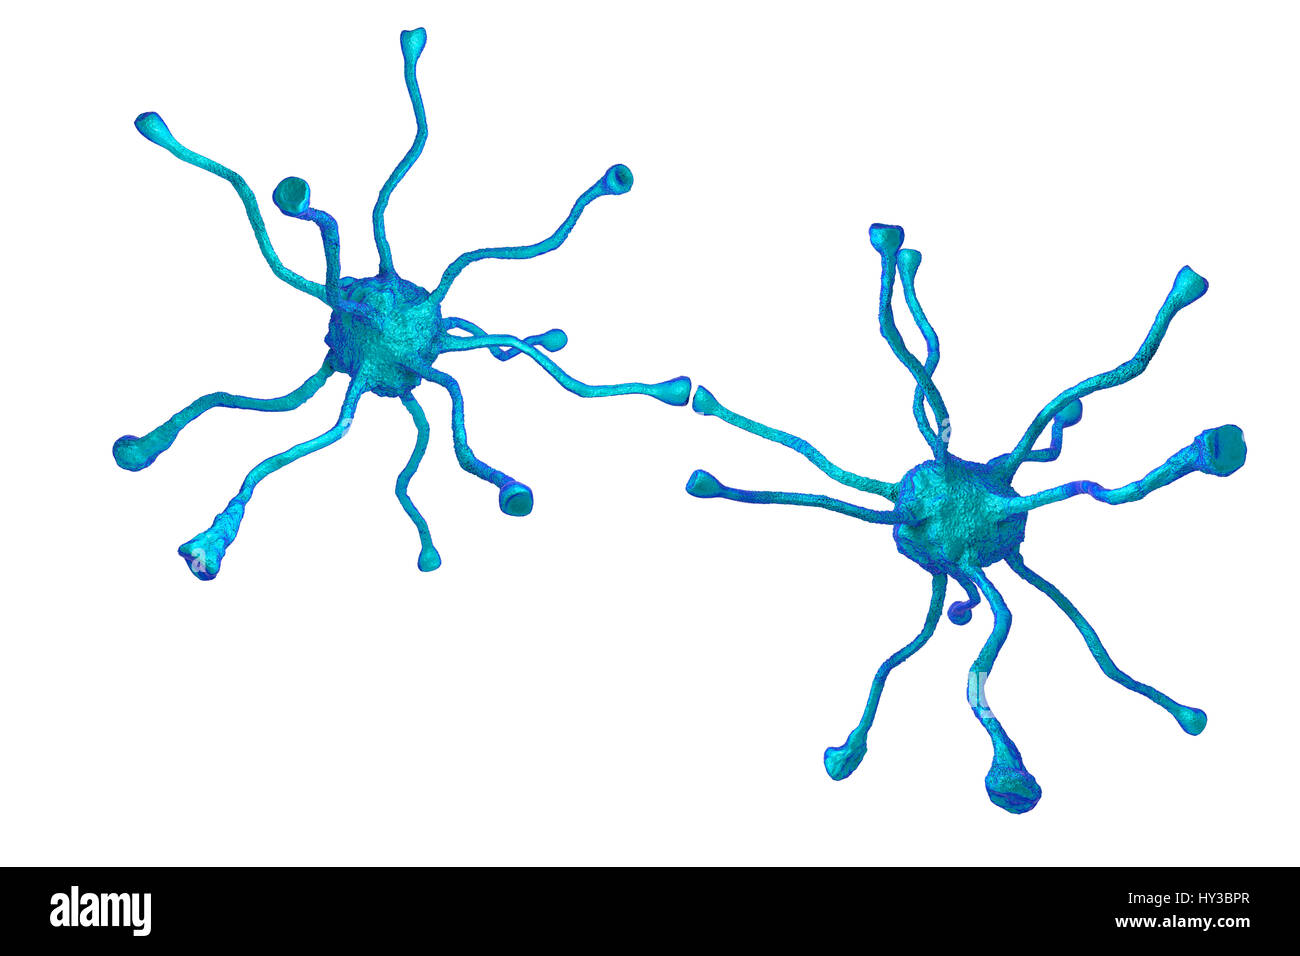 Nervenzellen oder Neuronen, aus dem menschlichen Gehirn, Computer Bild. Stockfoto